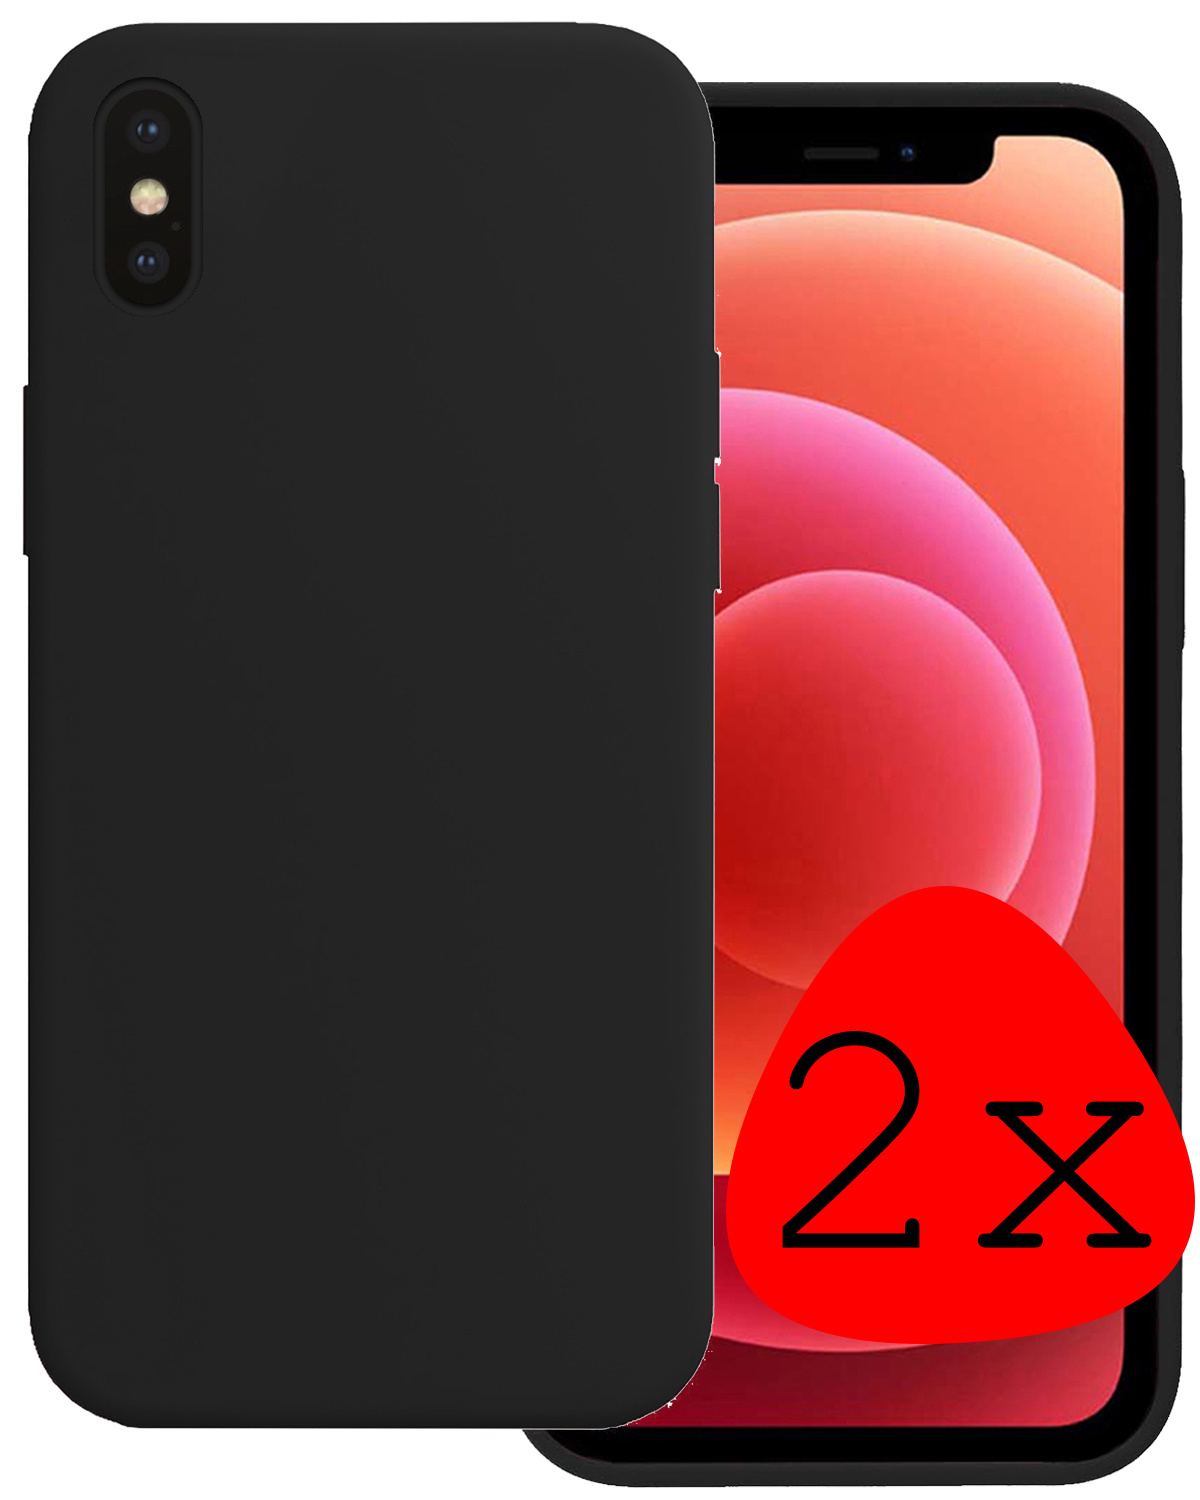 BASEY. Hoes voor Xs Max Hoesje Siliconen Cover Case - Hoes voor iPhone Xs Max Hoes Silicone Case Hoesje - Zwart - 2 Stuks -